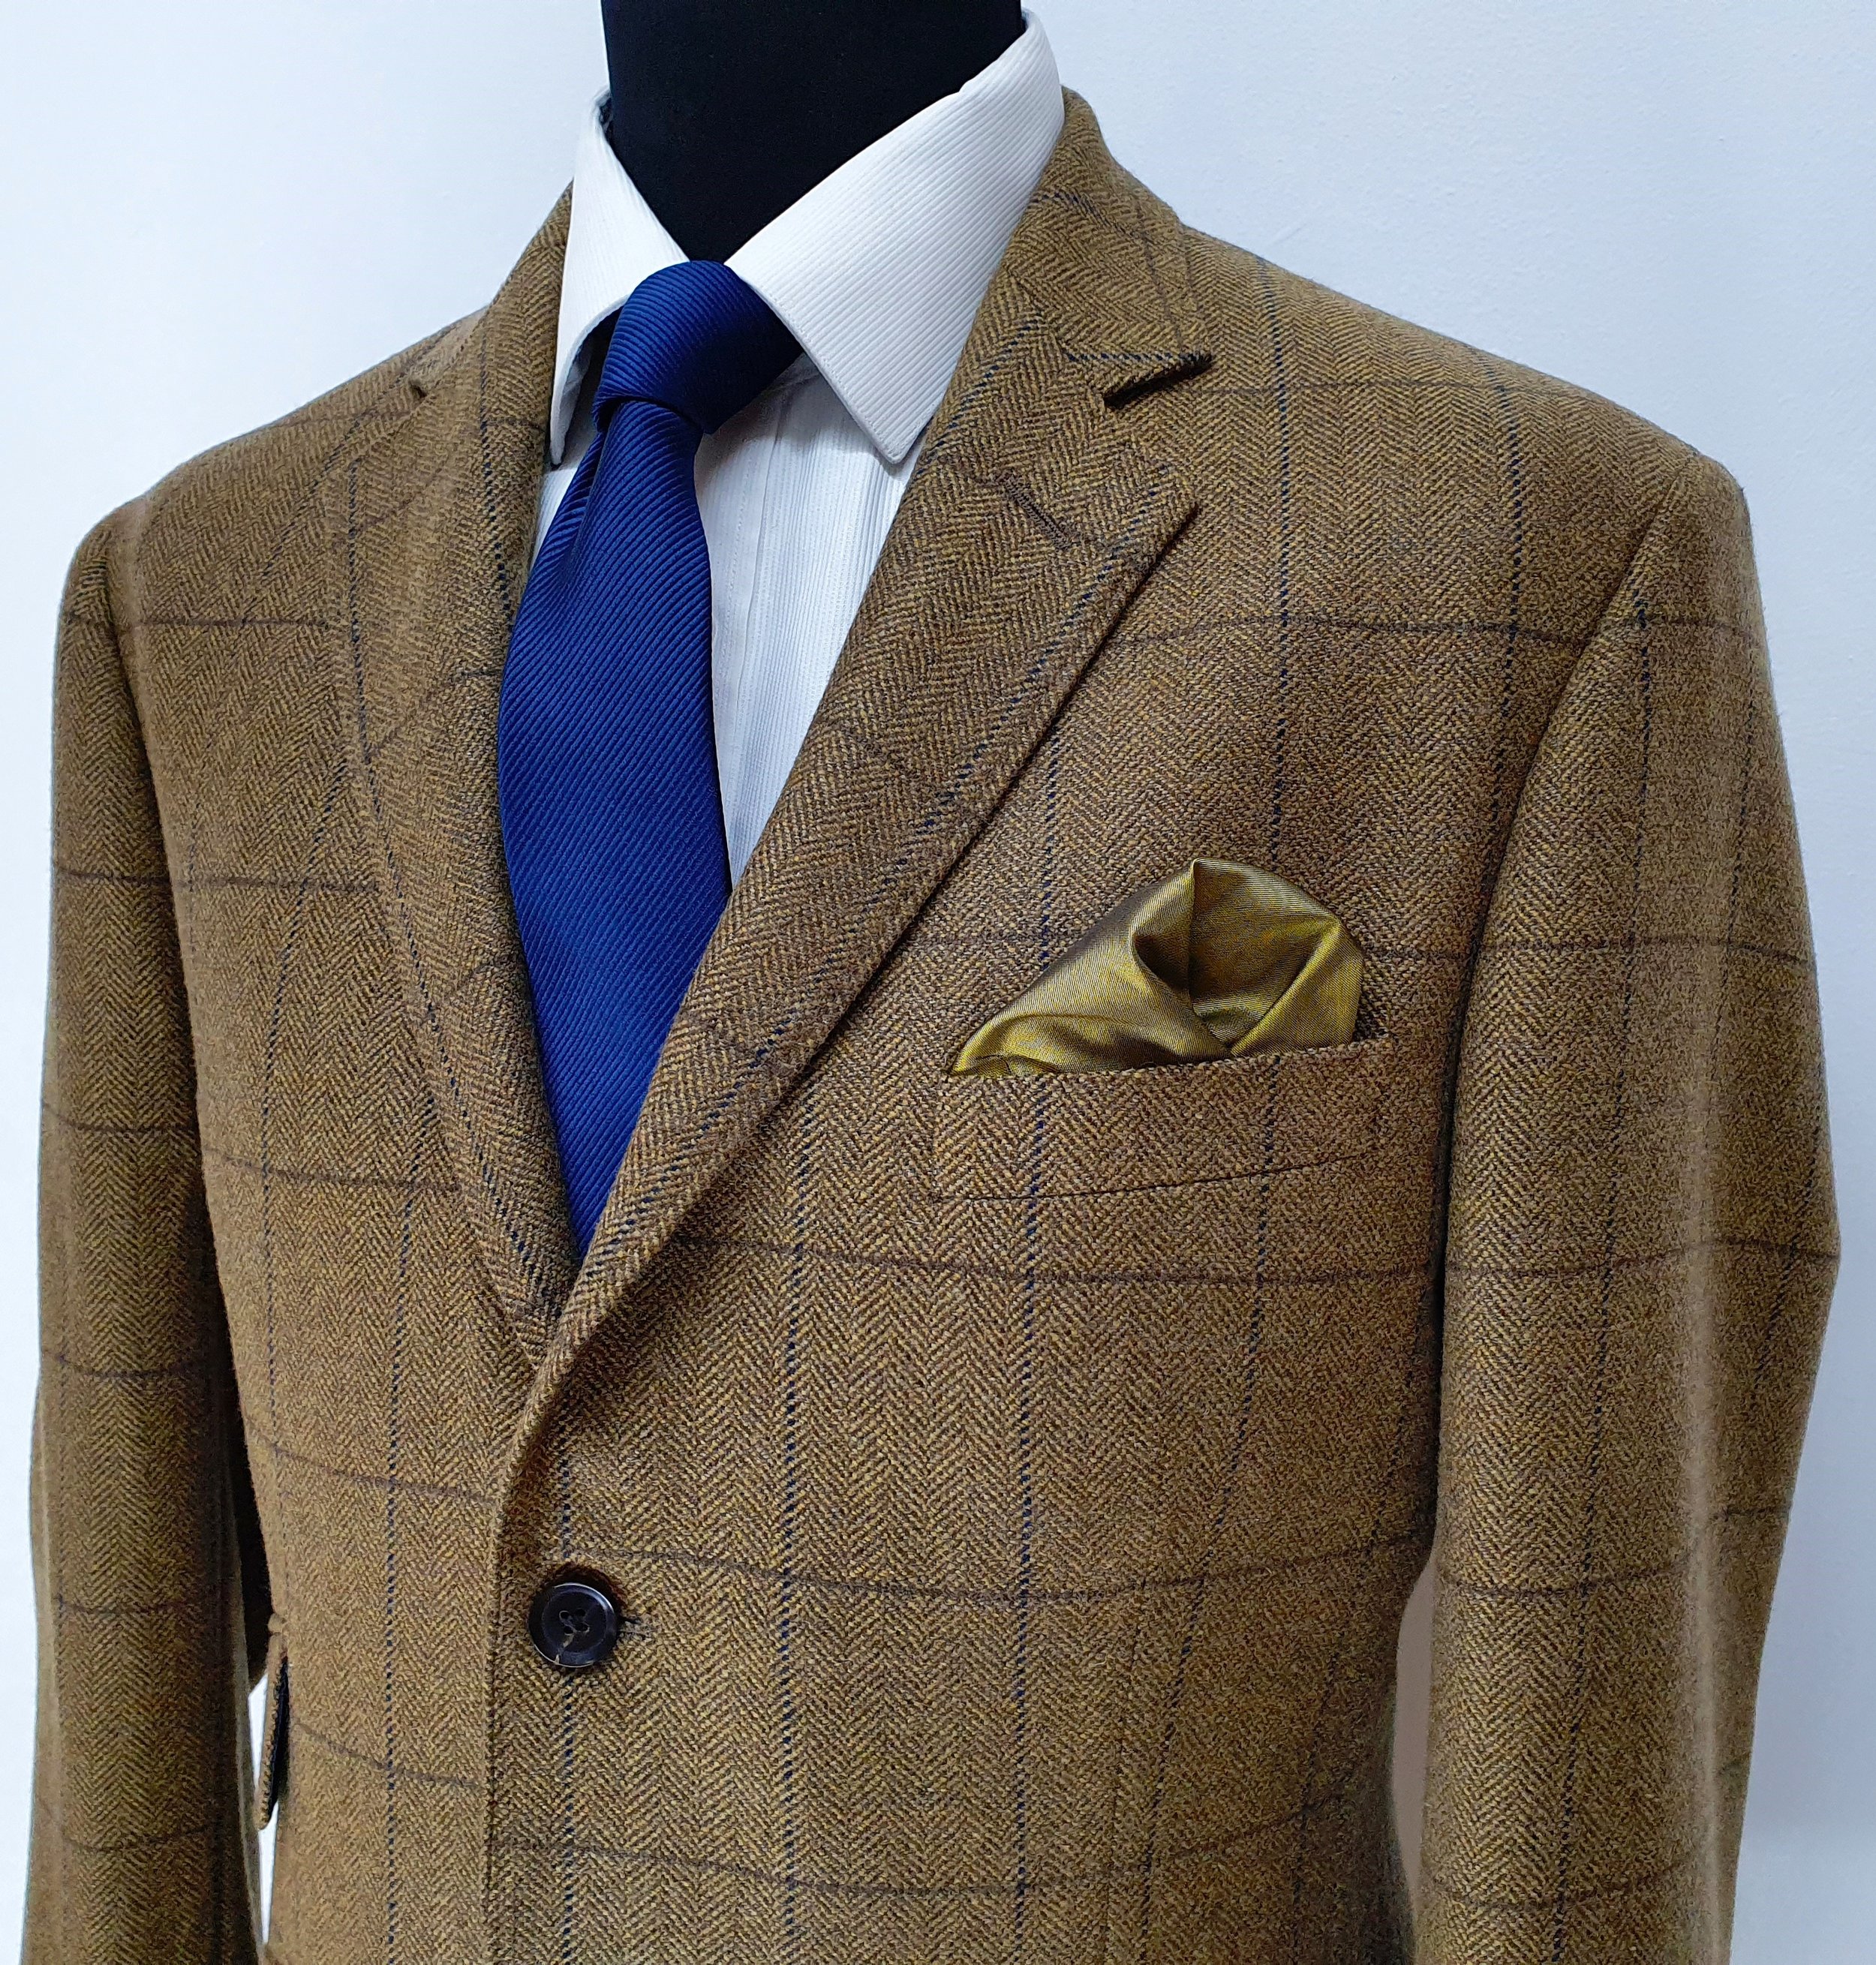 2 Piece suit in porter and harding Glenroyal tweed (5).jpg